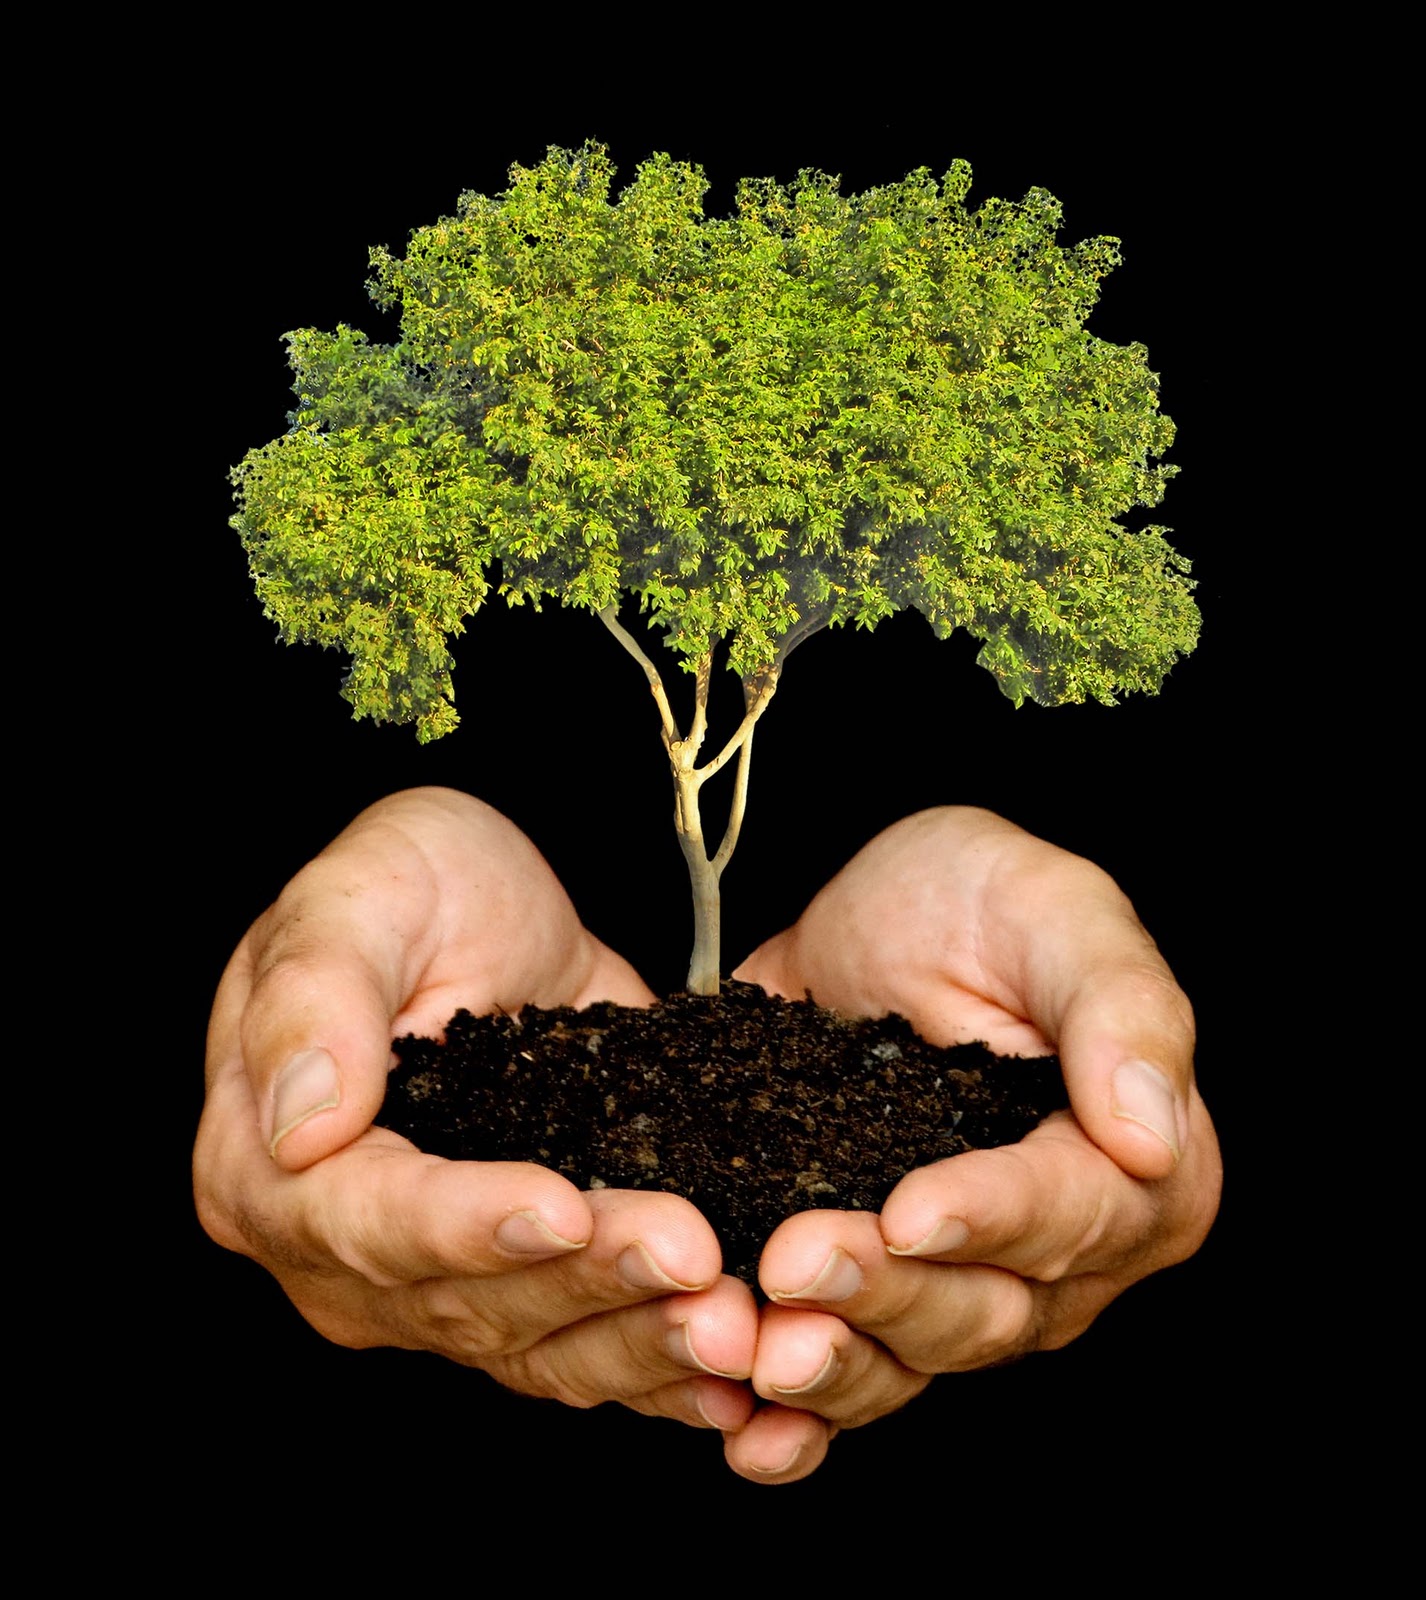 Plantemos un árbol, y otro árbol | Blogs El Espectador